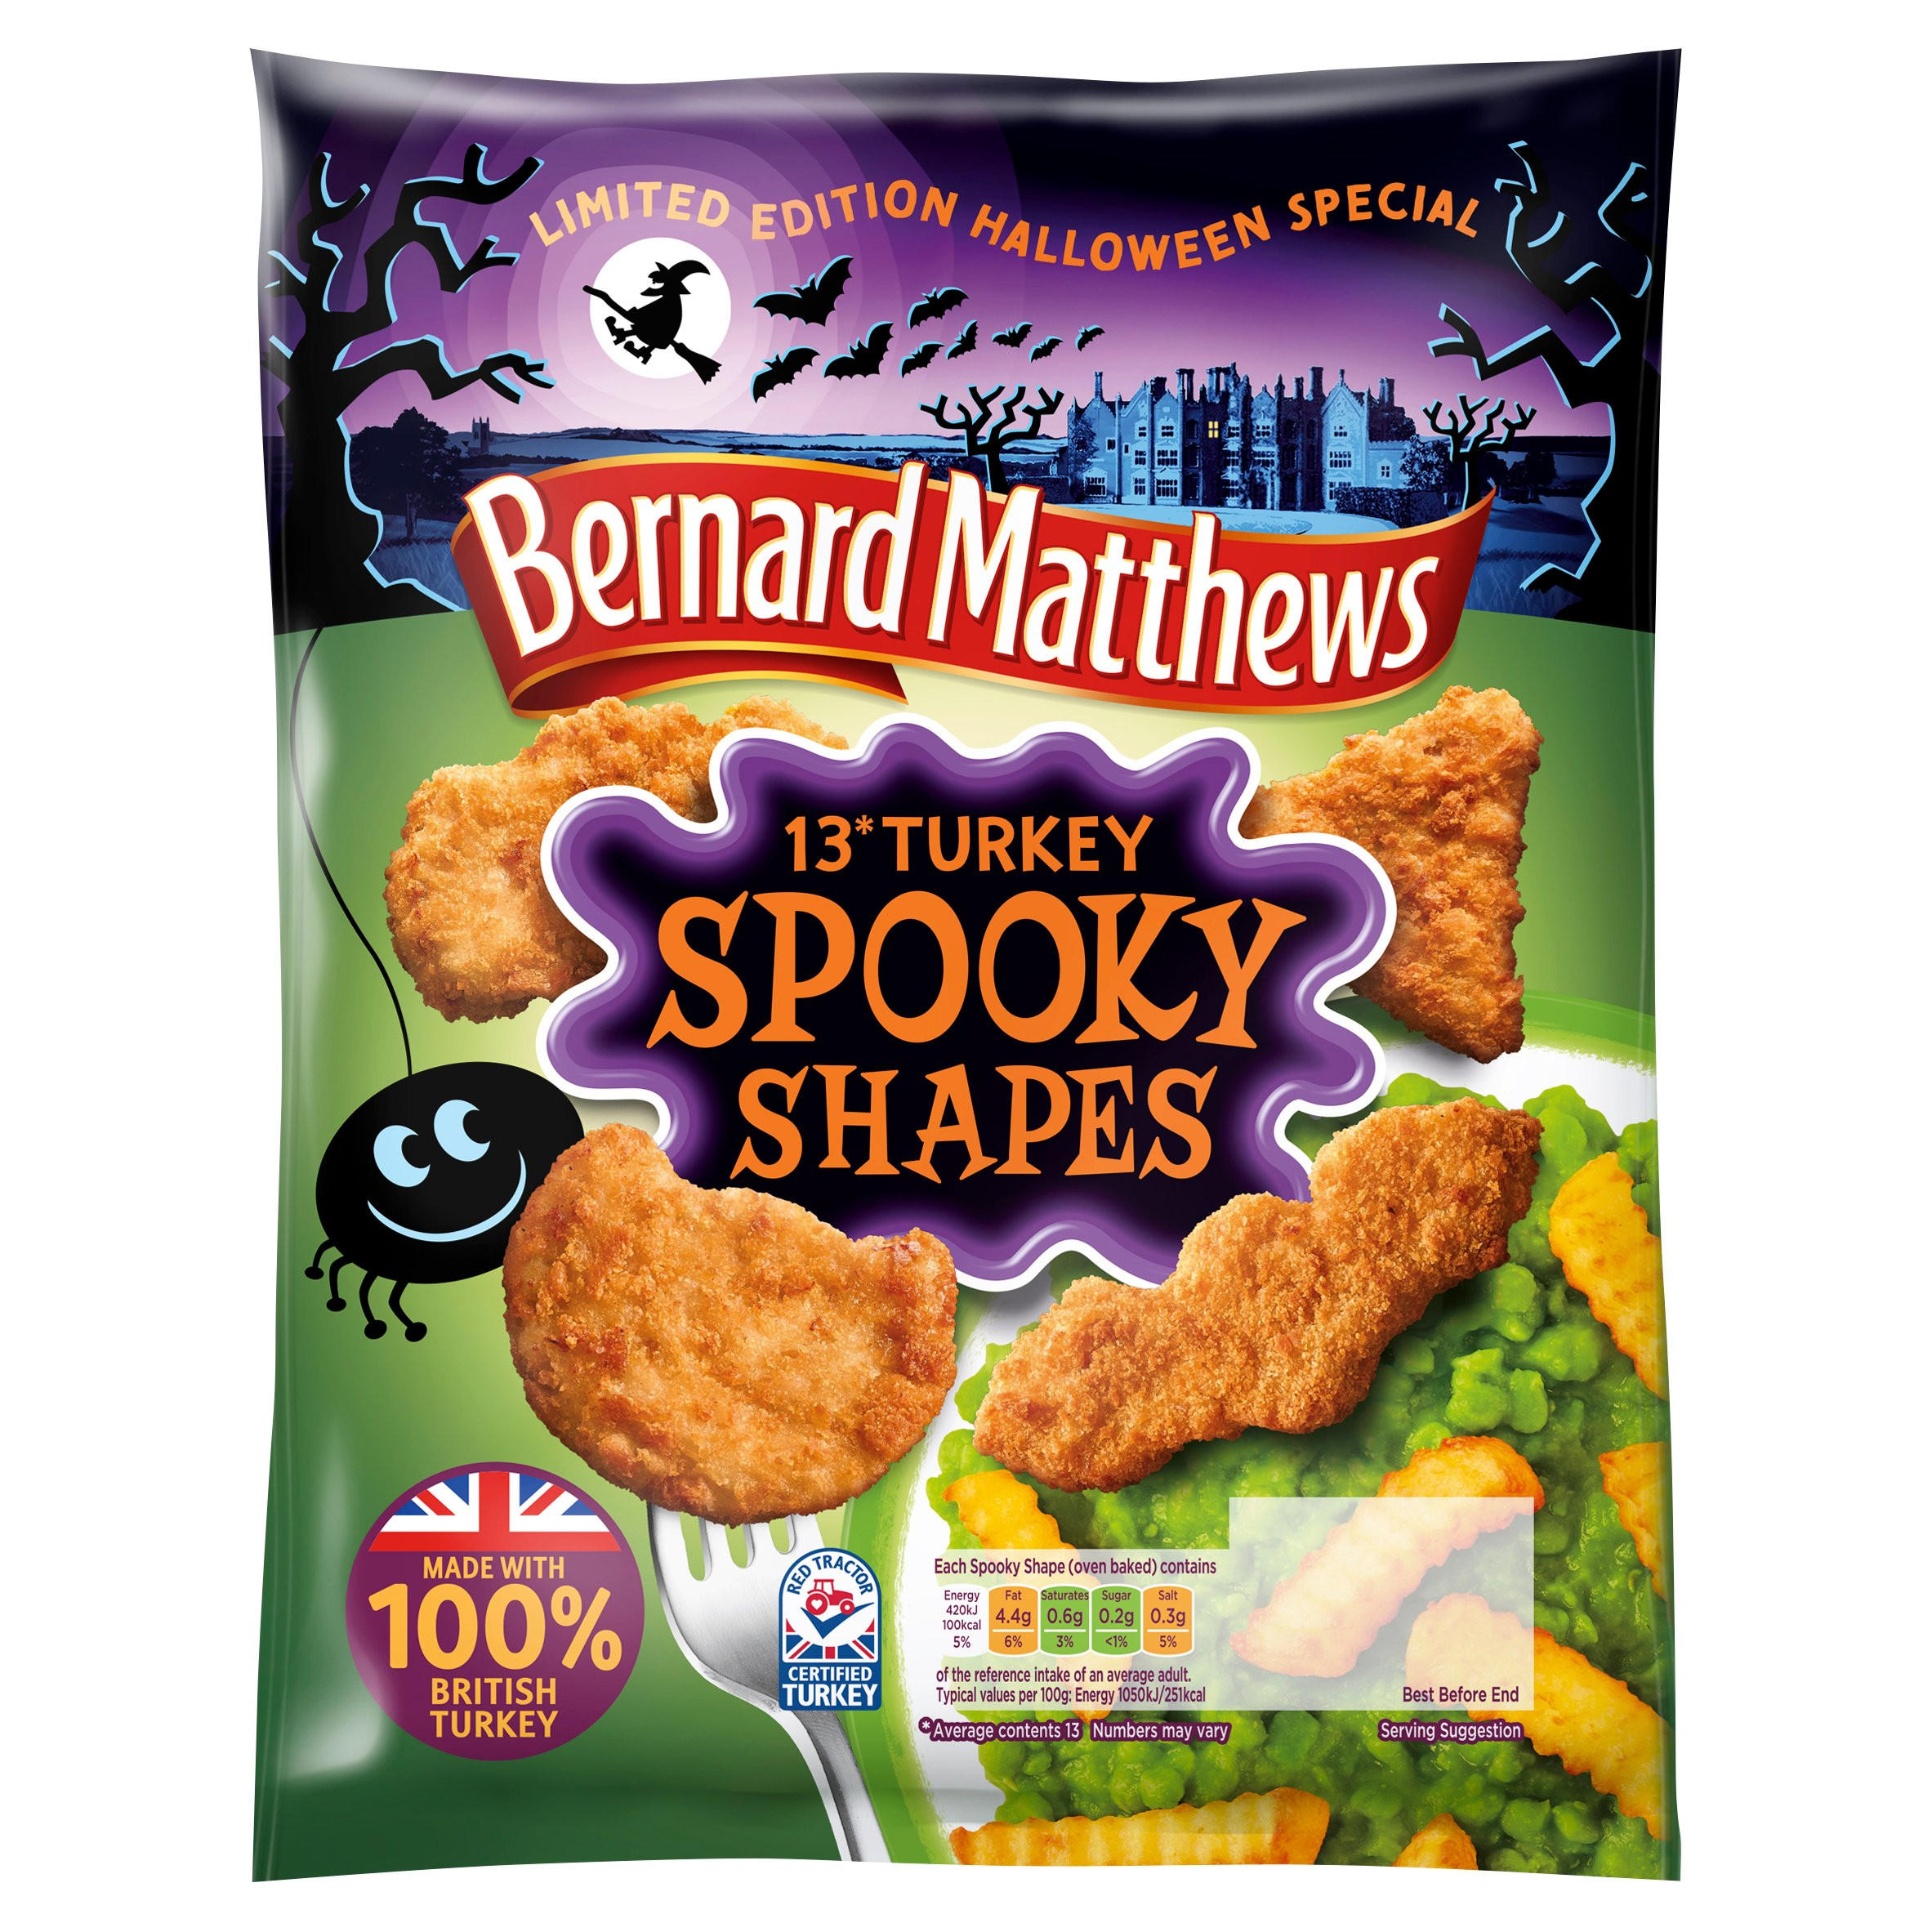 Bernard Matthews Limited Edition Halloween Special